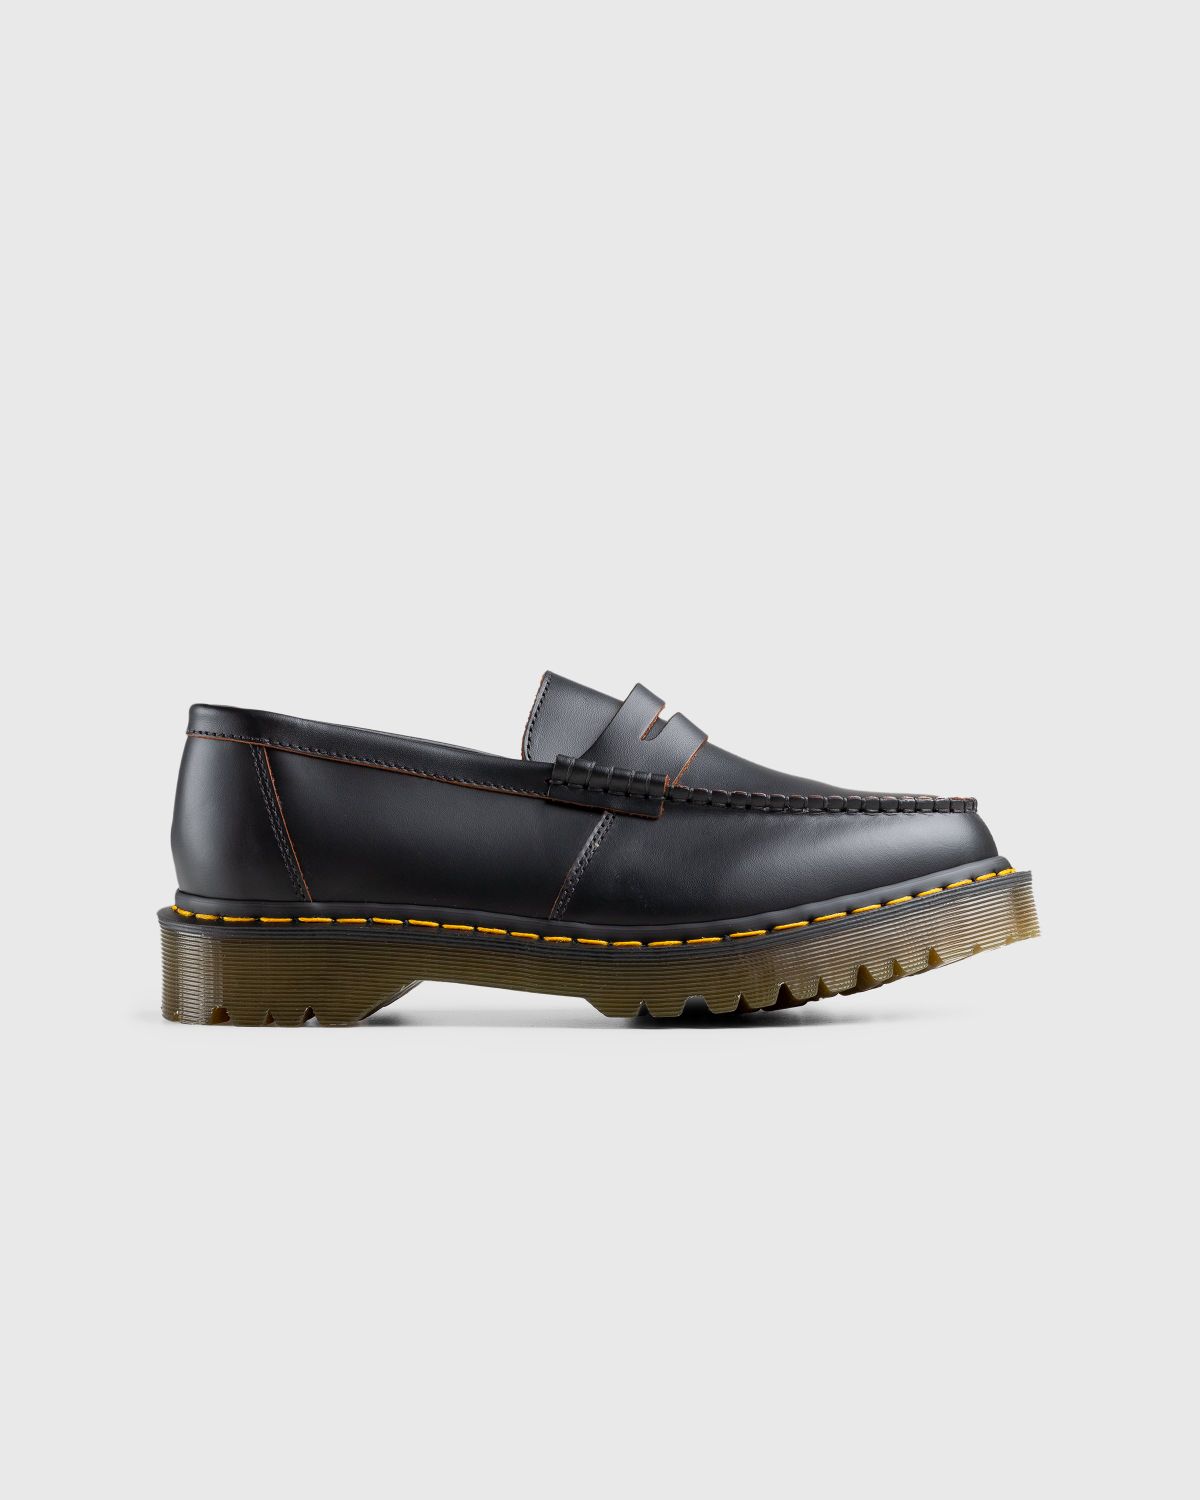 Dr. Martens – Penton Bex Quilon Leather Loafers Black - Shoes - Black - Image 1